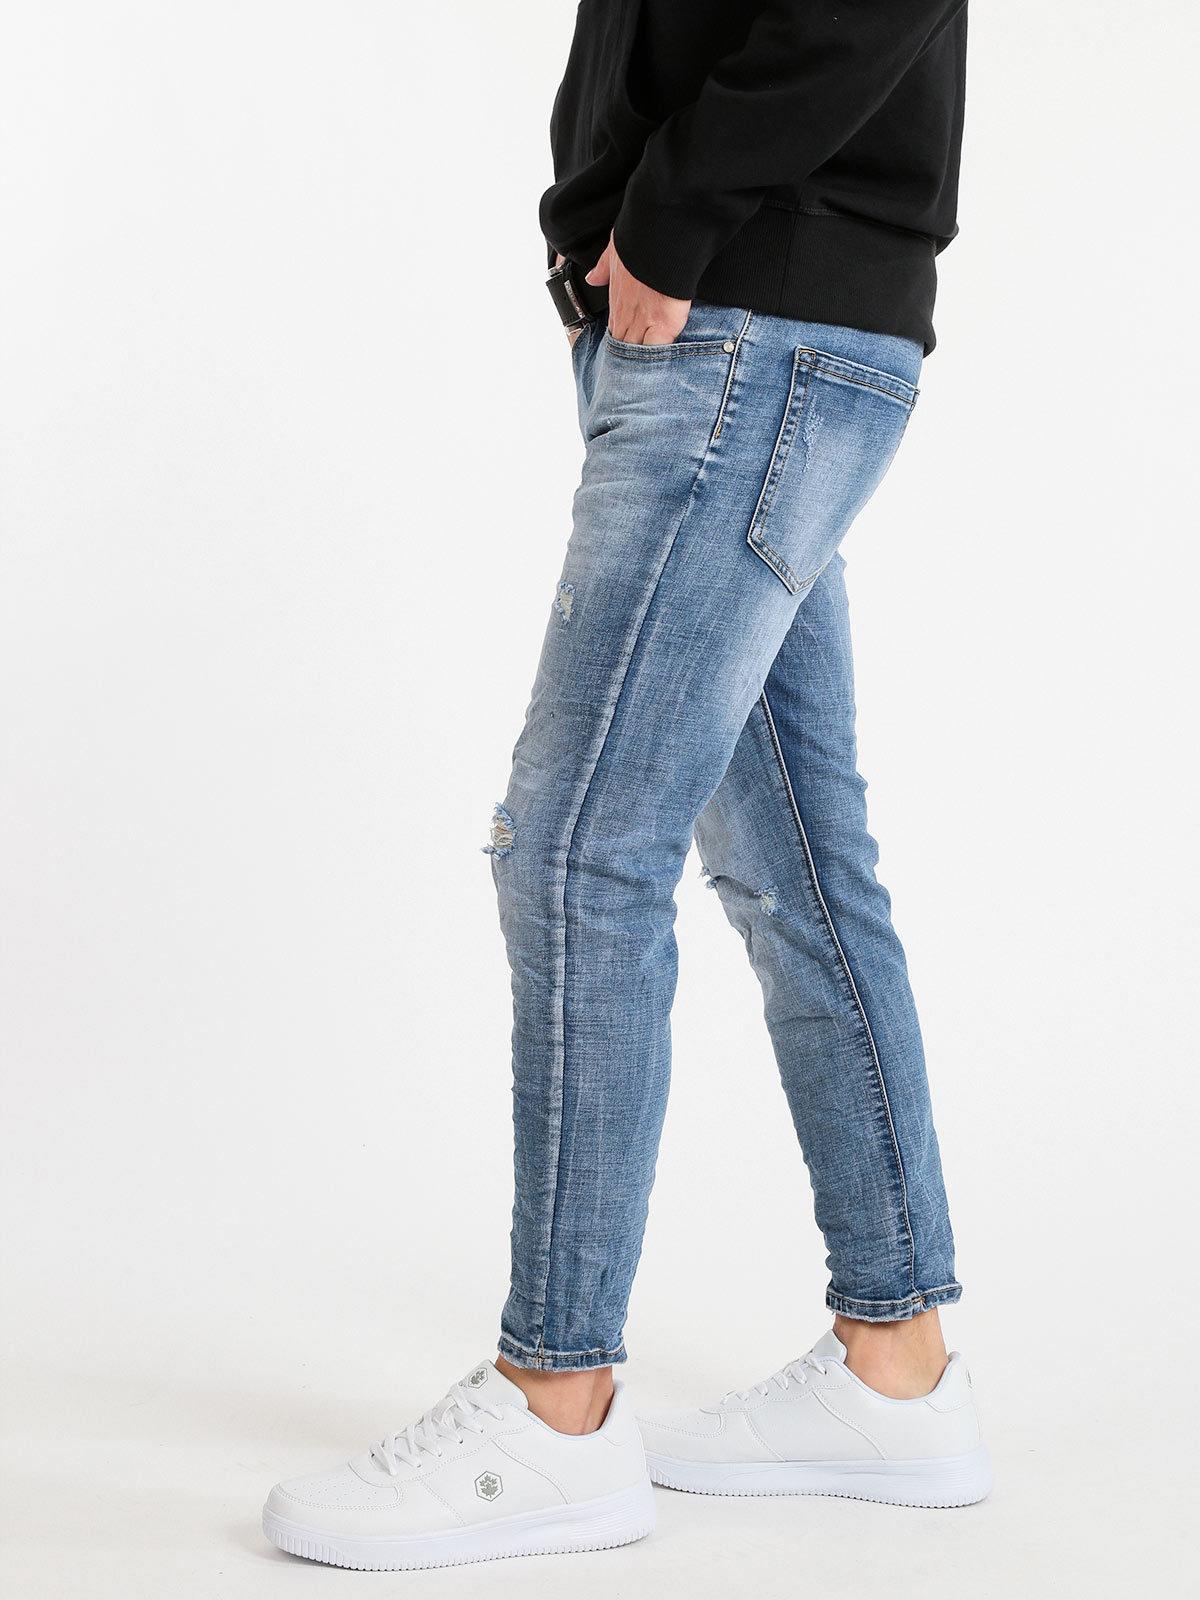 Pantaloni Uomo Jeans skinny Con Strappi Vestibilità Aderente Taglia Da 42 A 52 